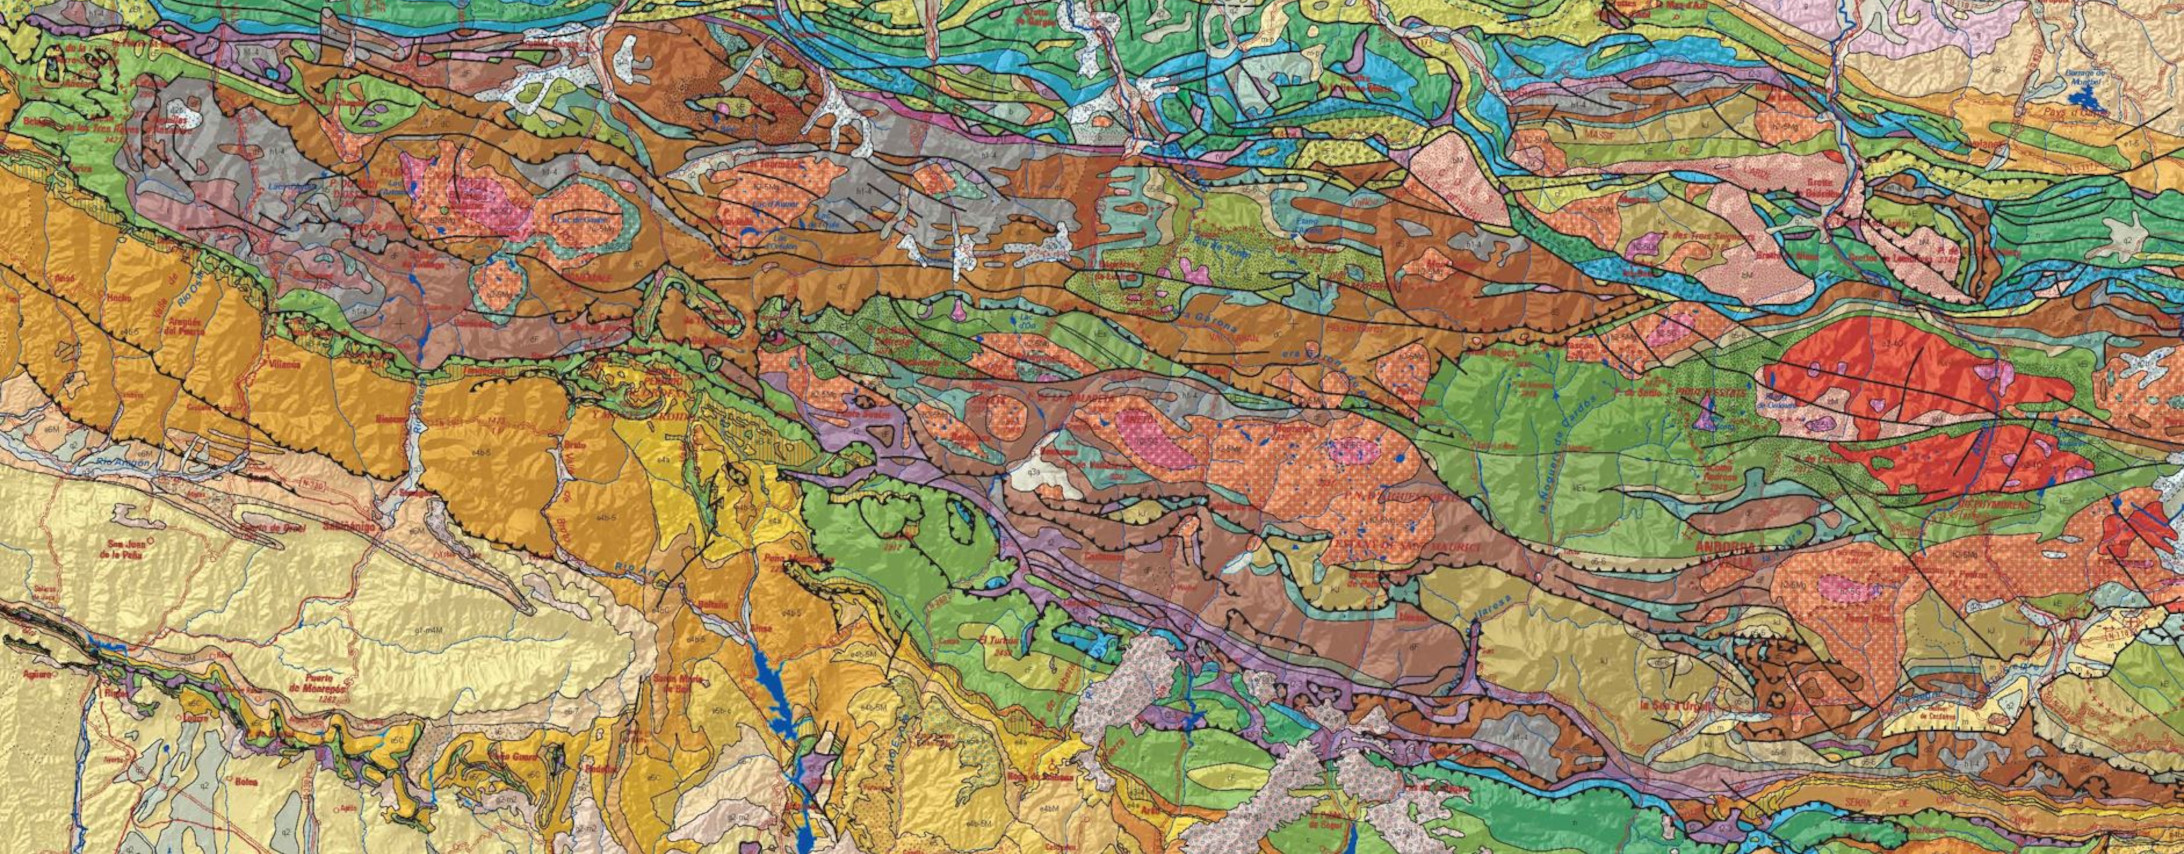 Mapa Geológico de Pirineos a escala 1:400.000